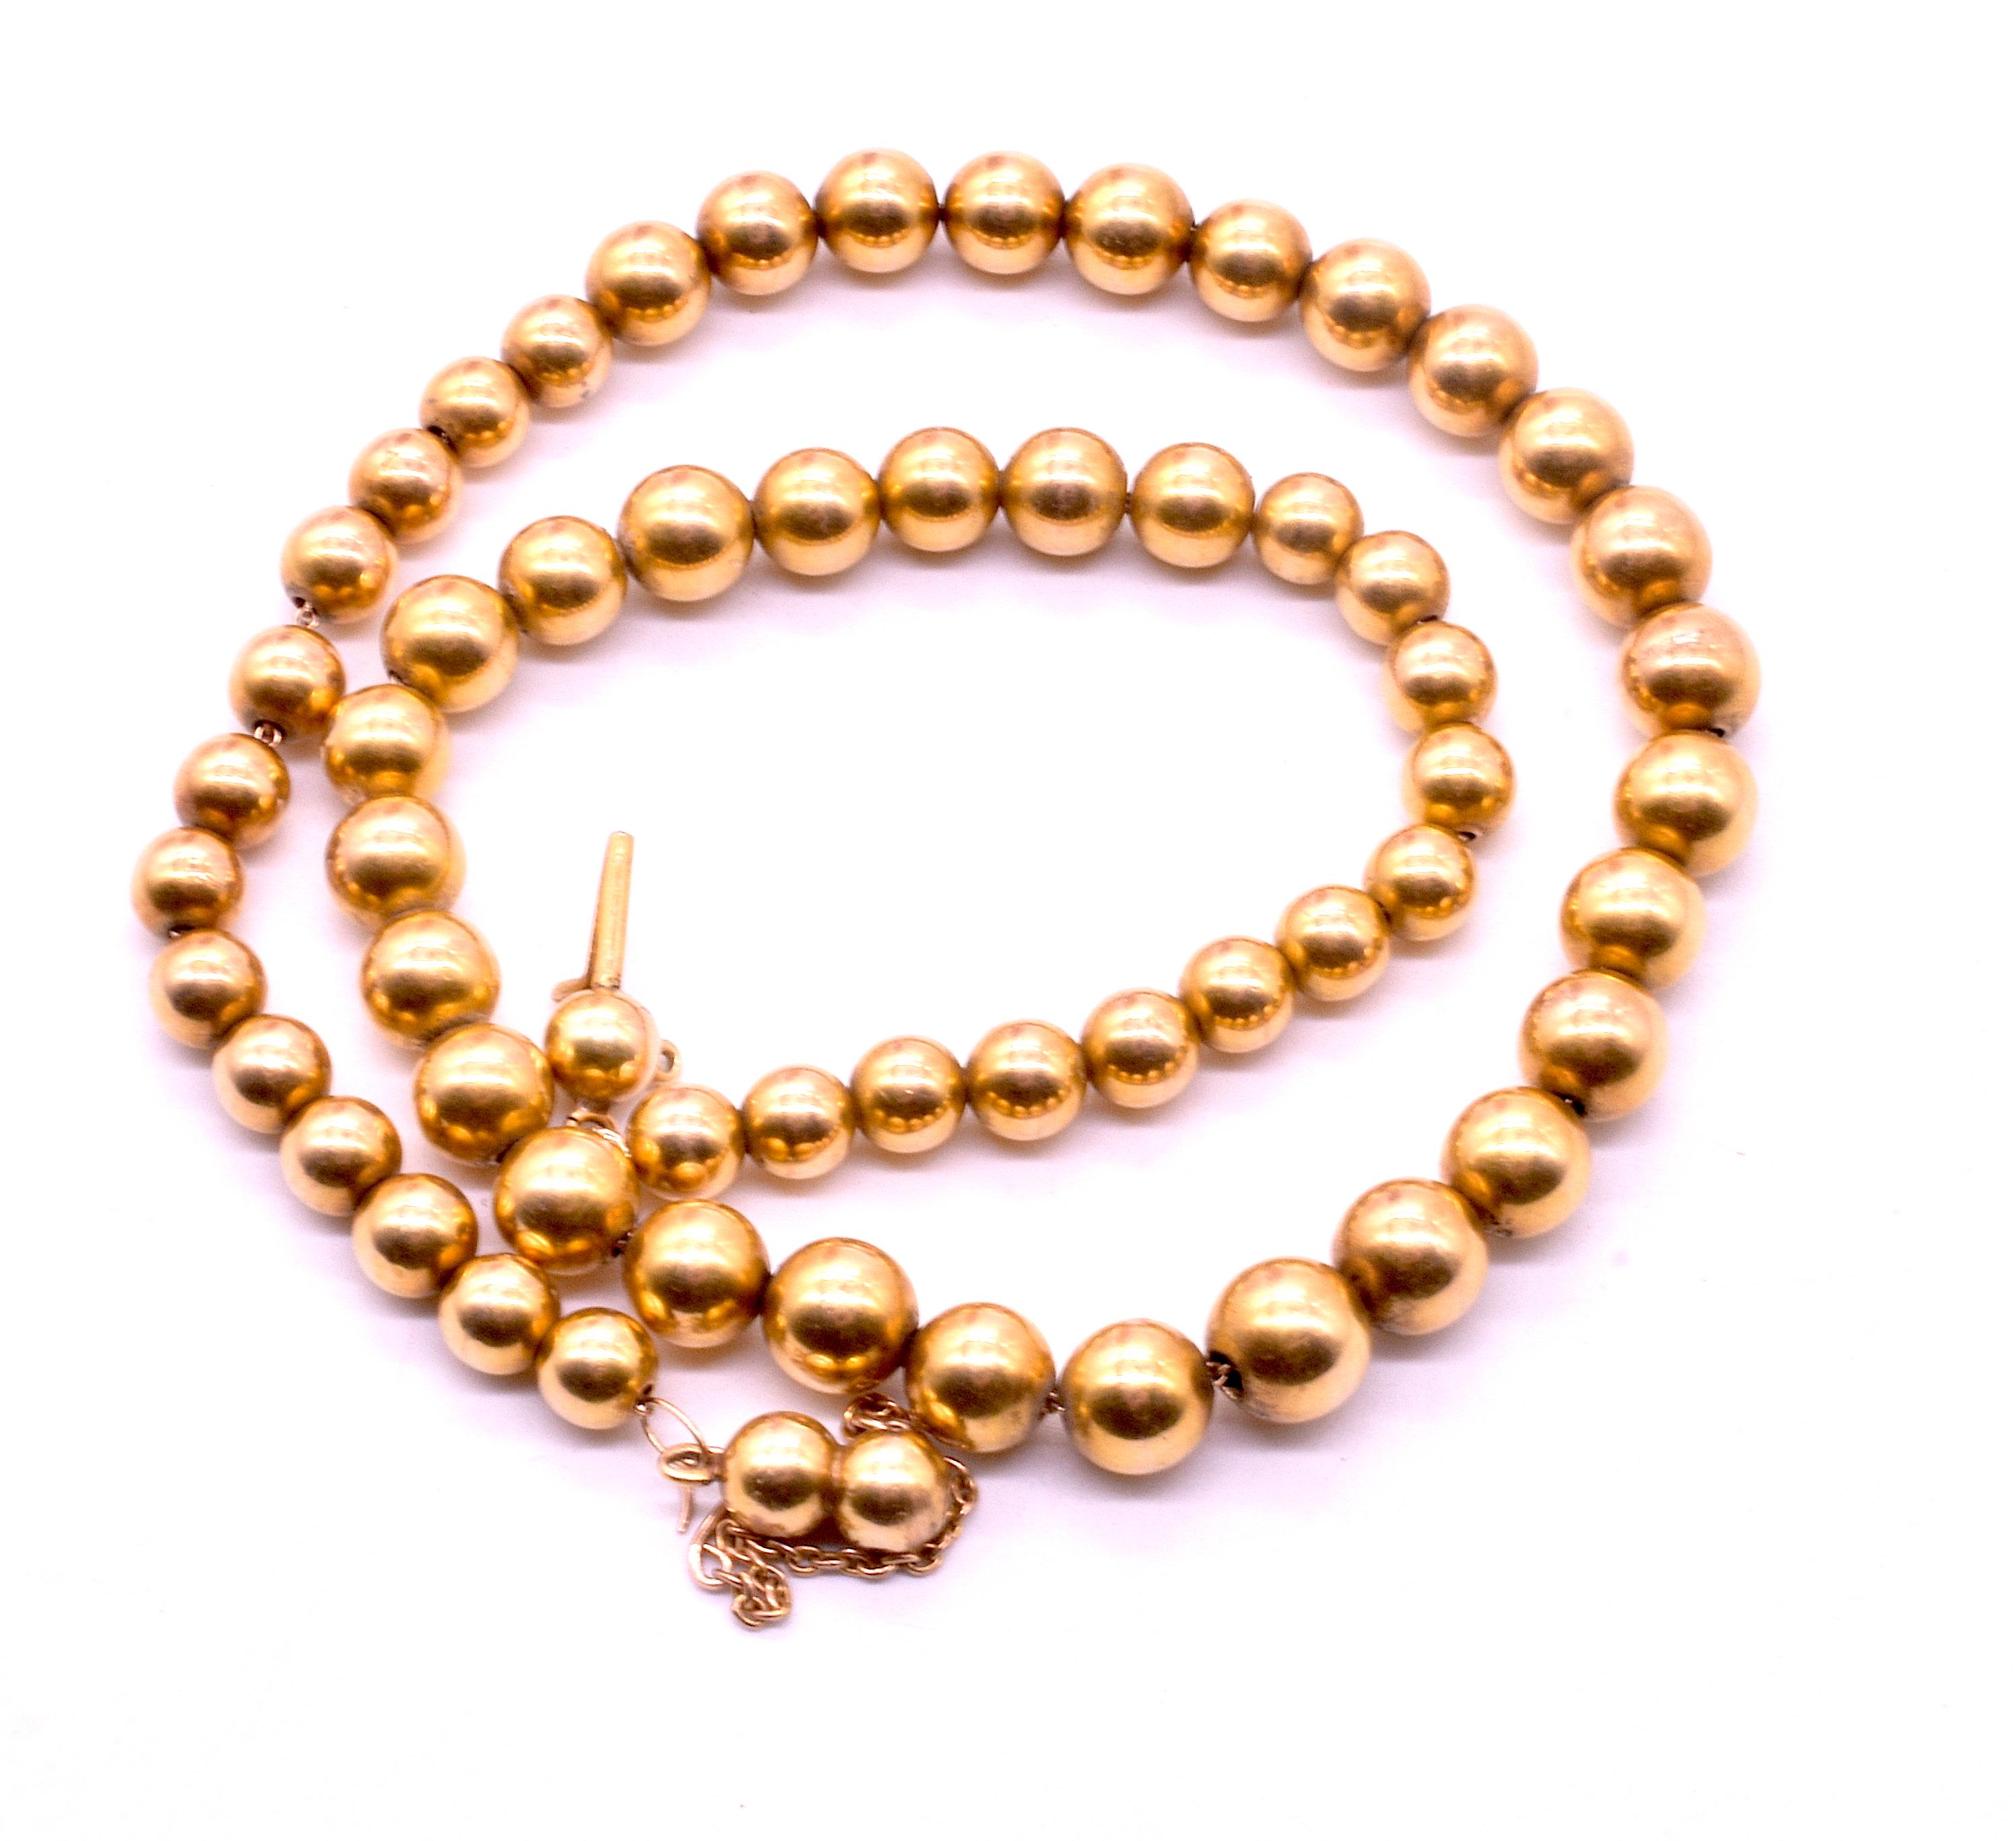 Unser viktorianisches Halsband von ca. 1860  abgestufte 18K Gelbgold handgefertigte massive Goldperlen aufgereiht auf eine Goldkette. Es ist das perfekte Stück, um es mit einer antiken Kette oder mit einer anderen Perlenkette zu kombinieren, wie auf